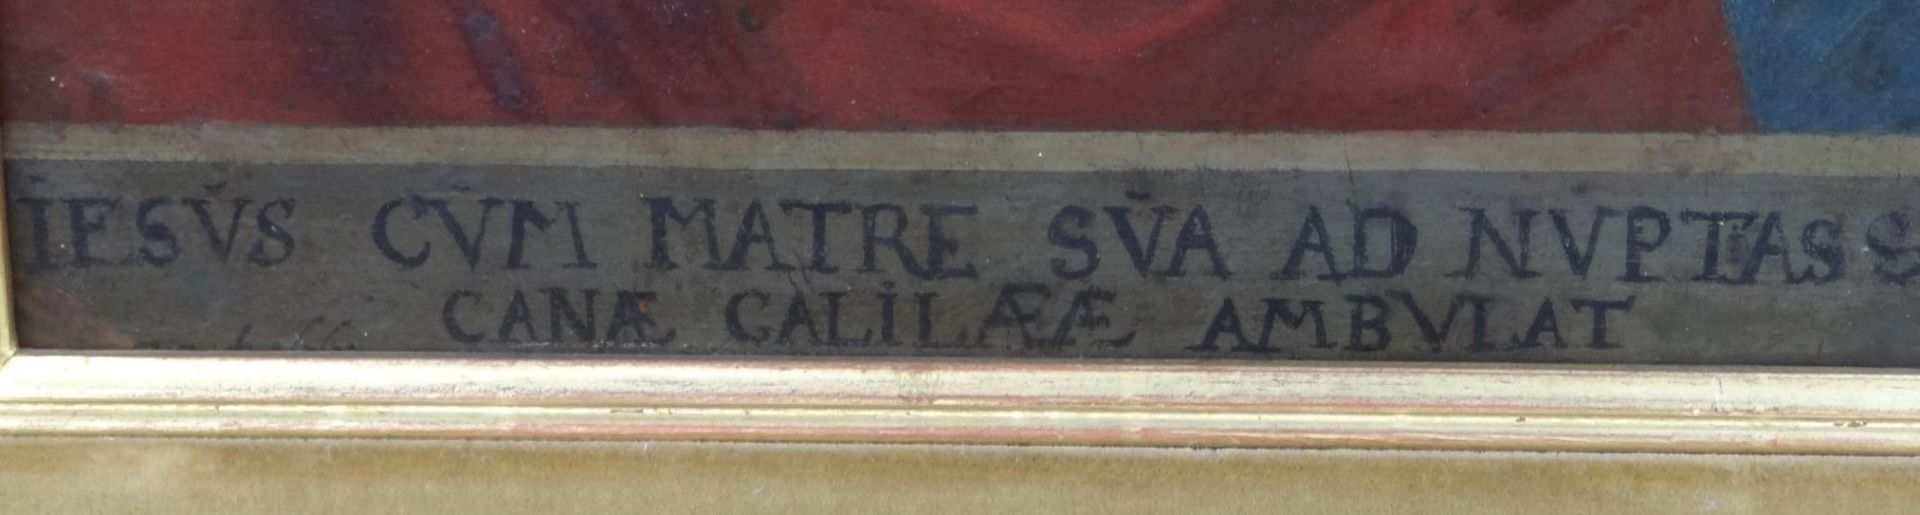 anonym "Jesus und Maria" Öl/Holz, lateinisch beschriftet,37x27 cm, gerahmt,60x50 cm, wohl 18.Jhd., - Image 4 of 6